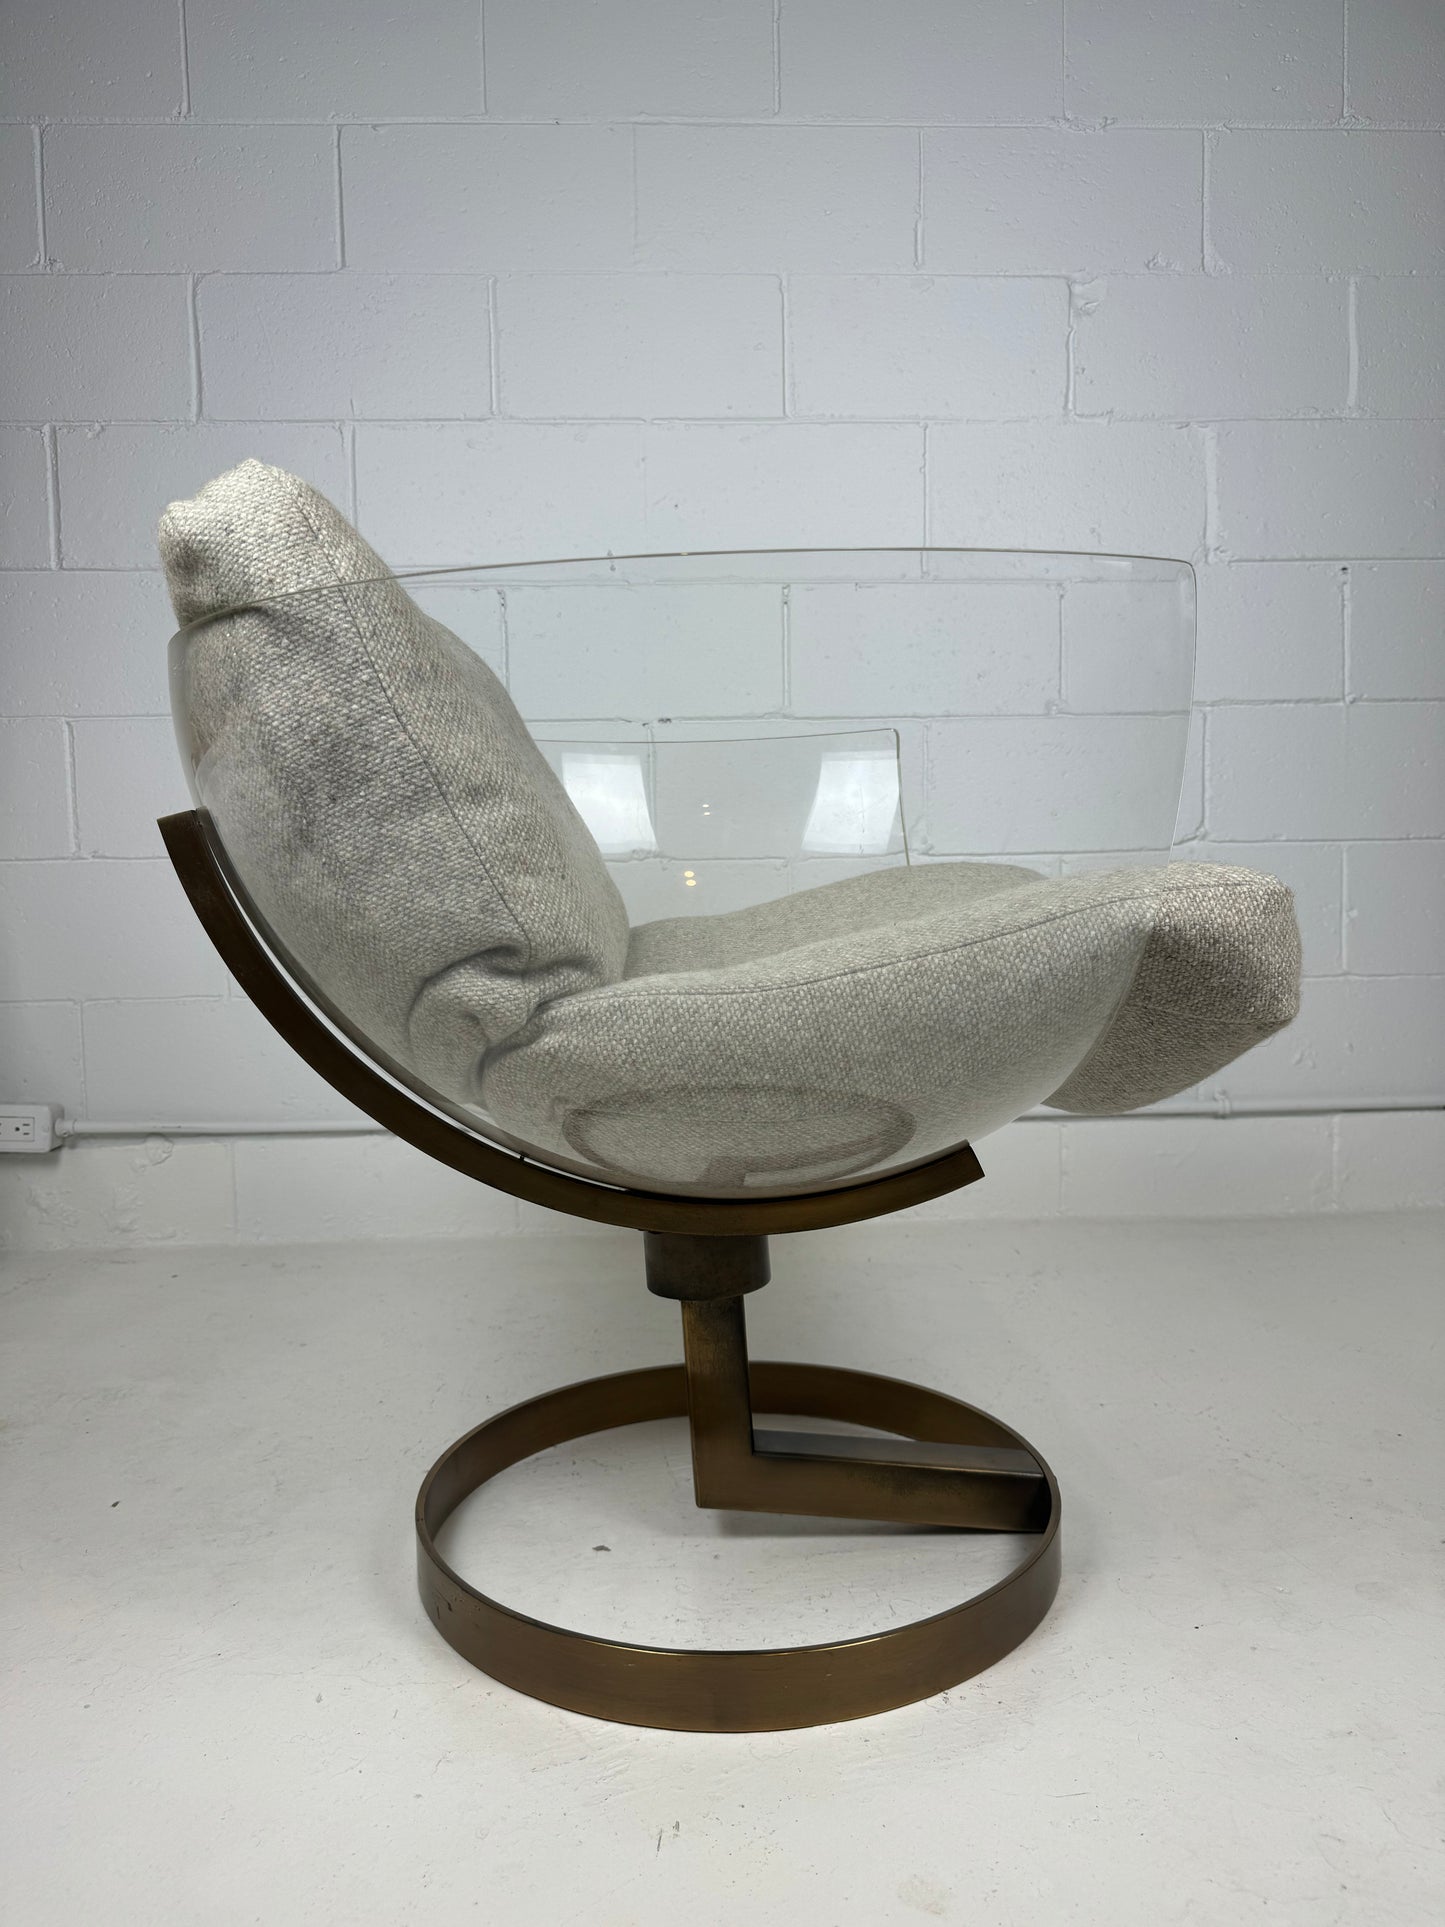 Bob Forrest "2001" Chair for L'Image Design